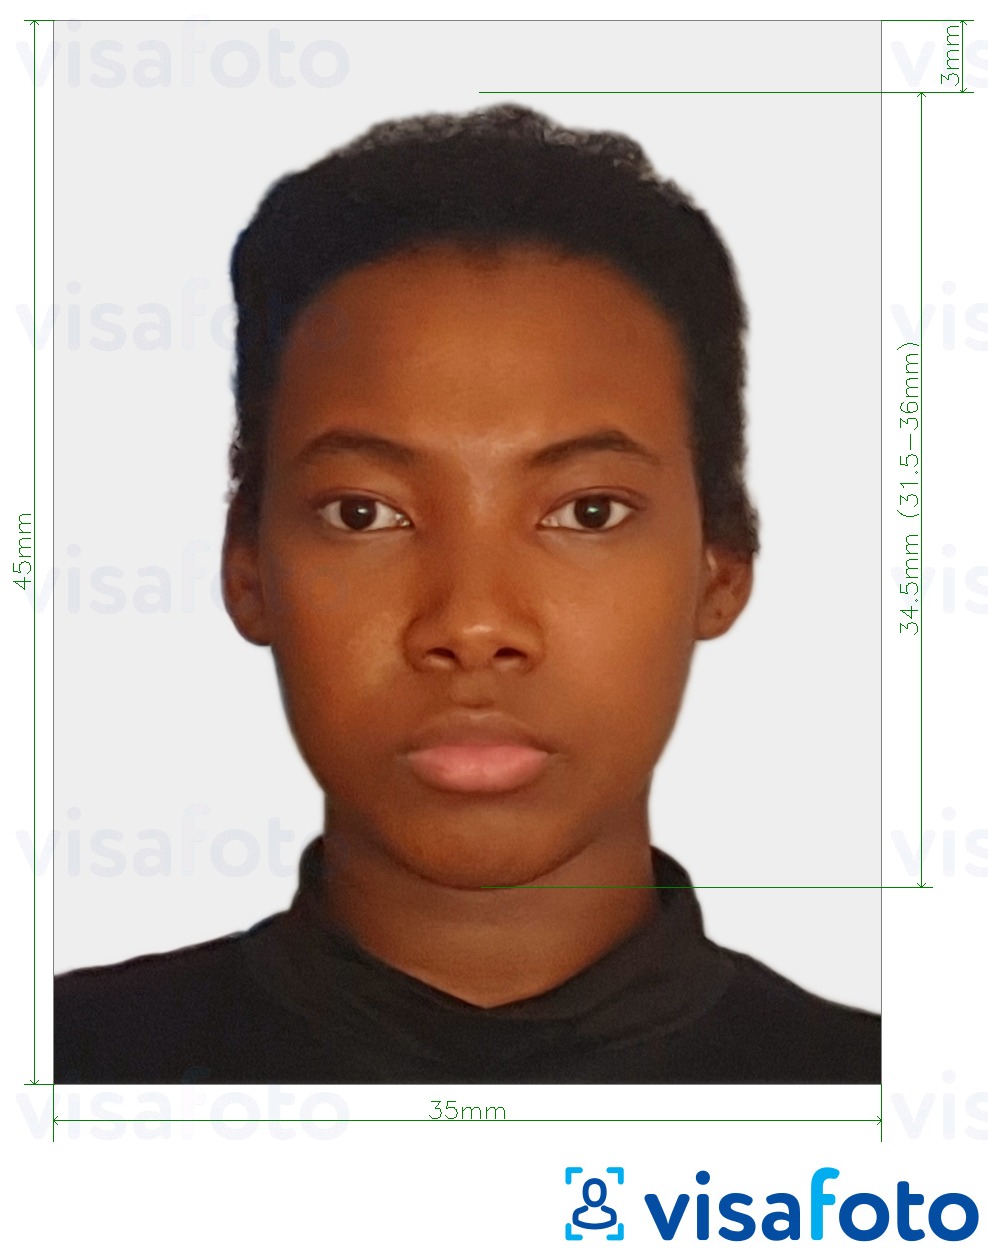 Նկարի օրինակ  35x45 մմ Հարավային Աֆրիկայի խելացի ID քարտ-ի համար ճշգրիտ չափորոշիչով։